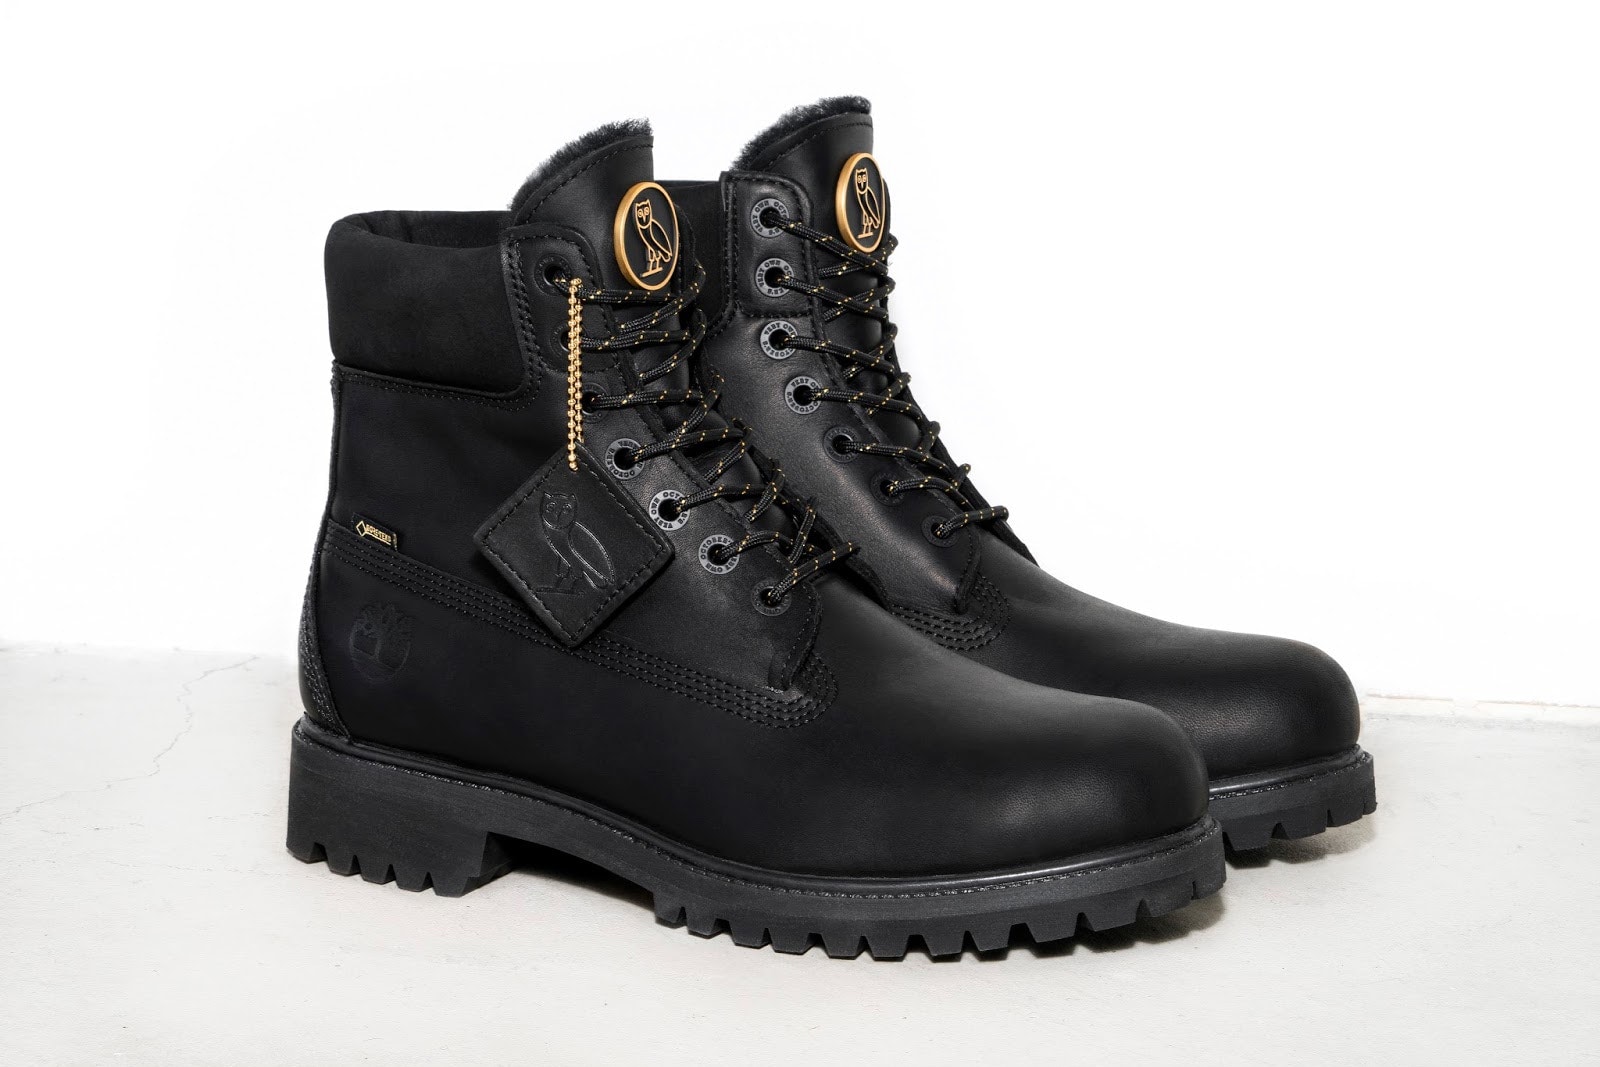 OVO x Timberland 6-Inch Boots 聯名靴款發售日期揭曉